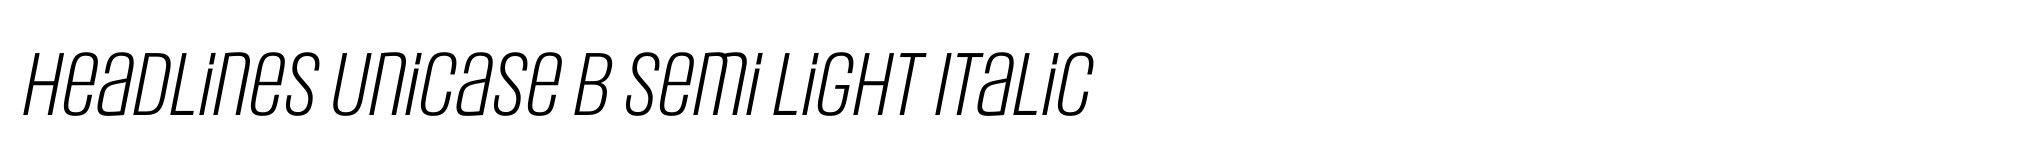 Headlines Unicase B Semi Light Italic image